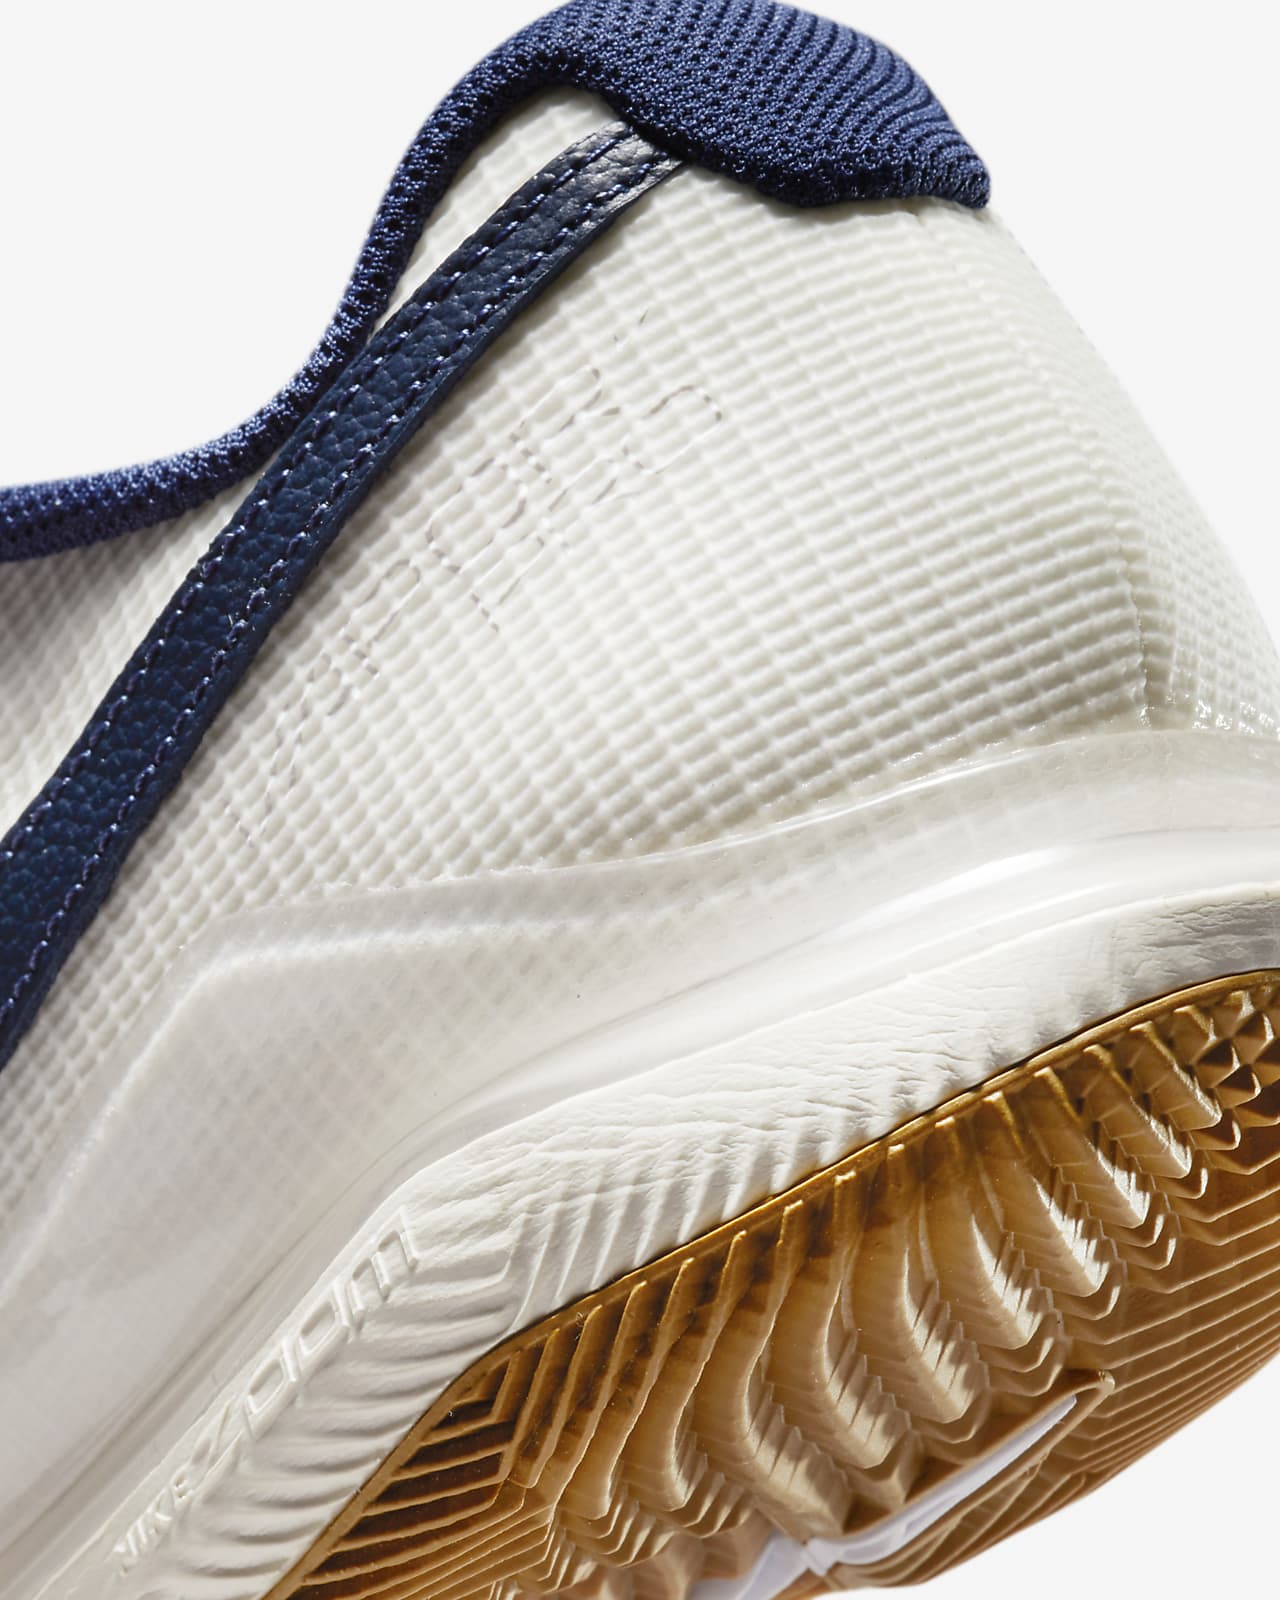 Chaussure de tennis pour surface dure NikeCourt Air Zoom Vapor Pro pour Homme